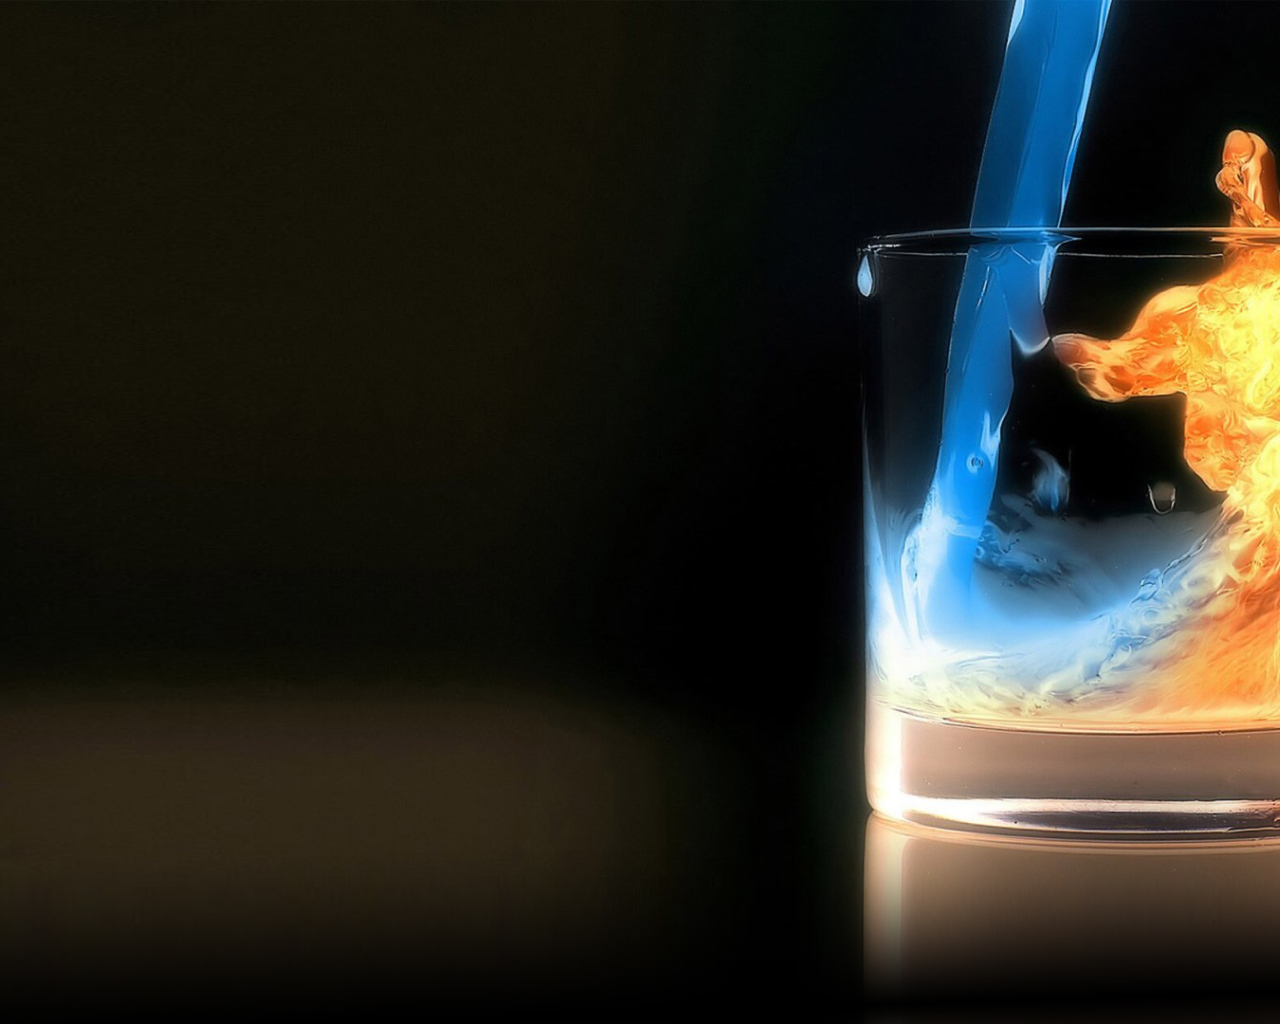 Огонь и вода в стакане